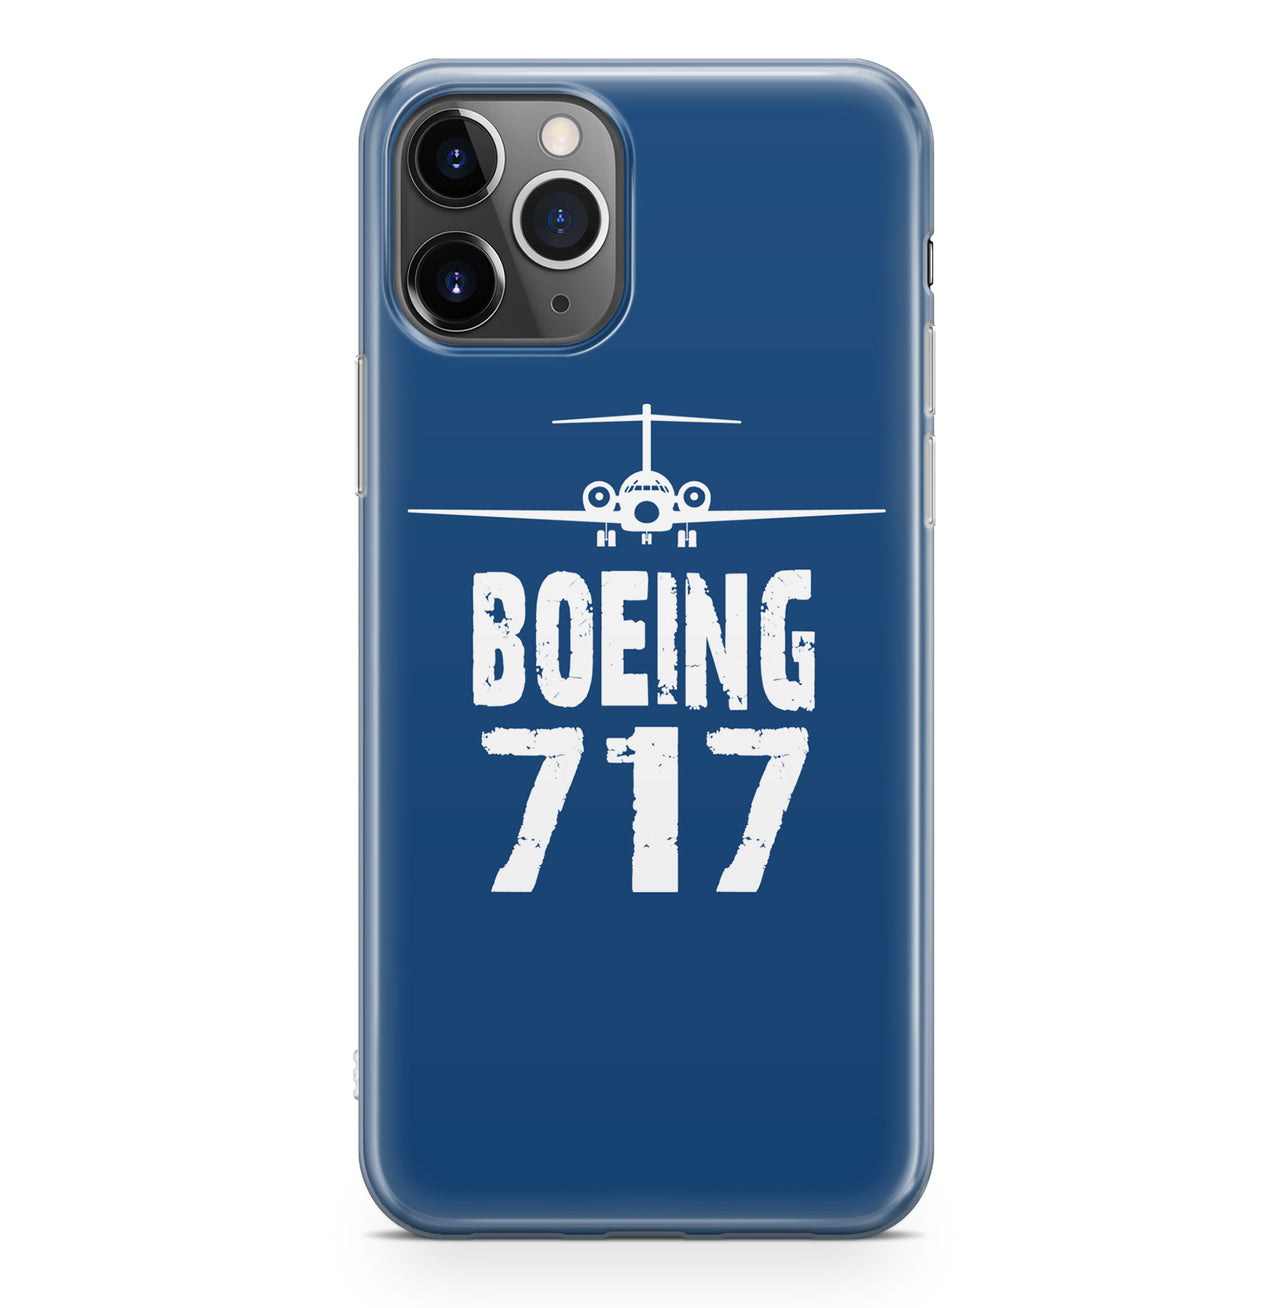 Boeing 717 & Plane Designed iPhone Cases